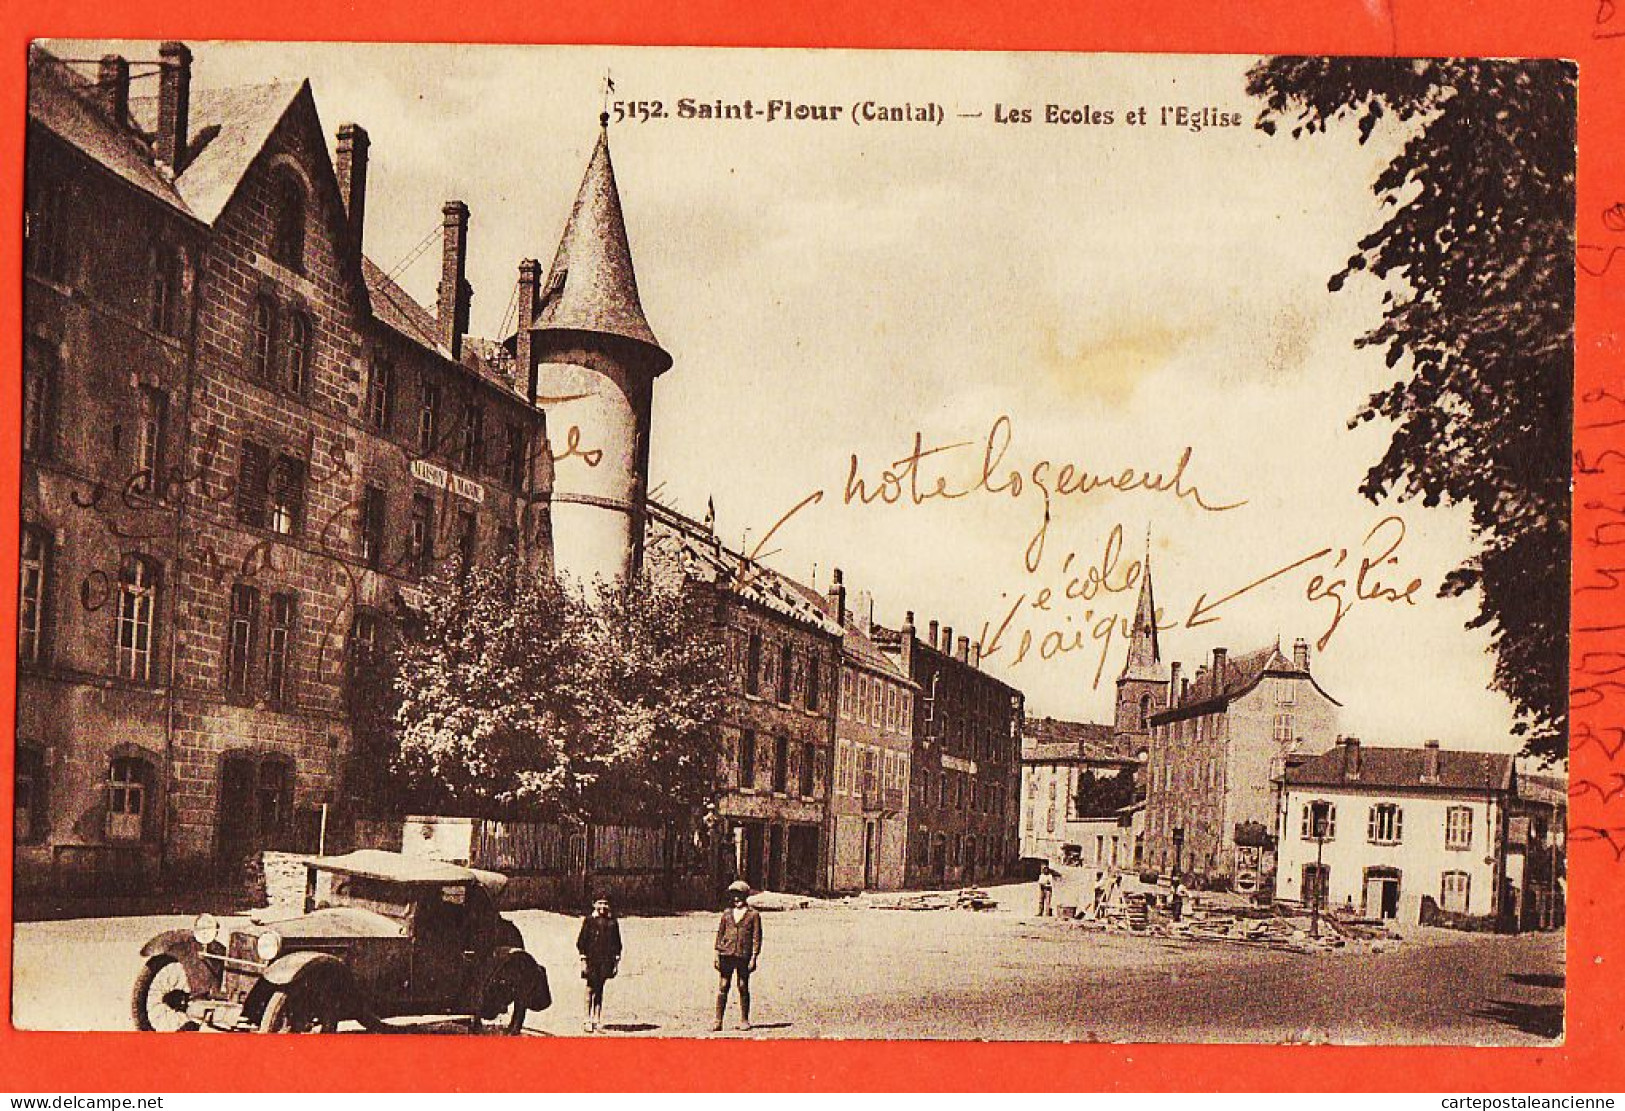 27371 / ♥️ ⭐ Rare Lisez 27-12-1933 Construction 3è Etage Notre Logement ◉ SAINT-FLOUR 15-Cantal ◉ Ecoles Laique Eglise - Saint Flour